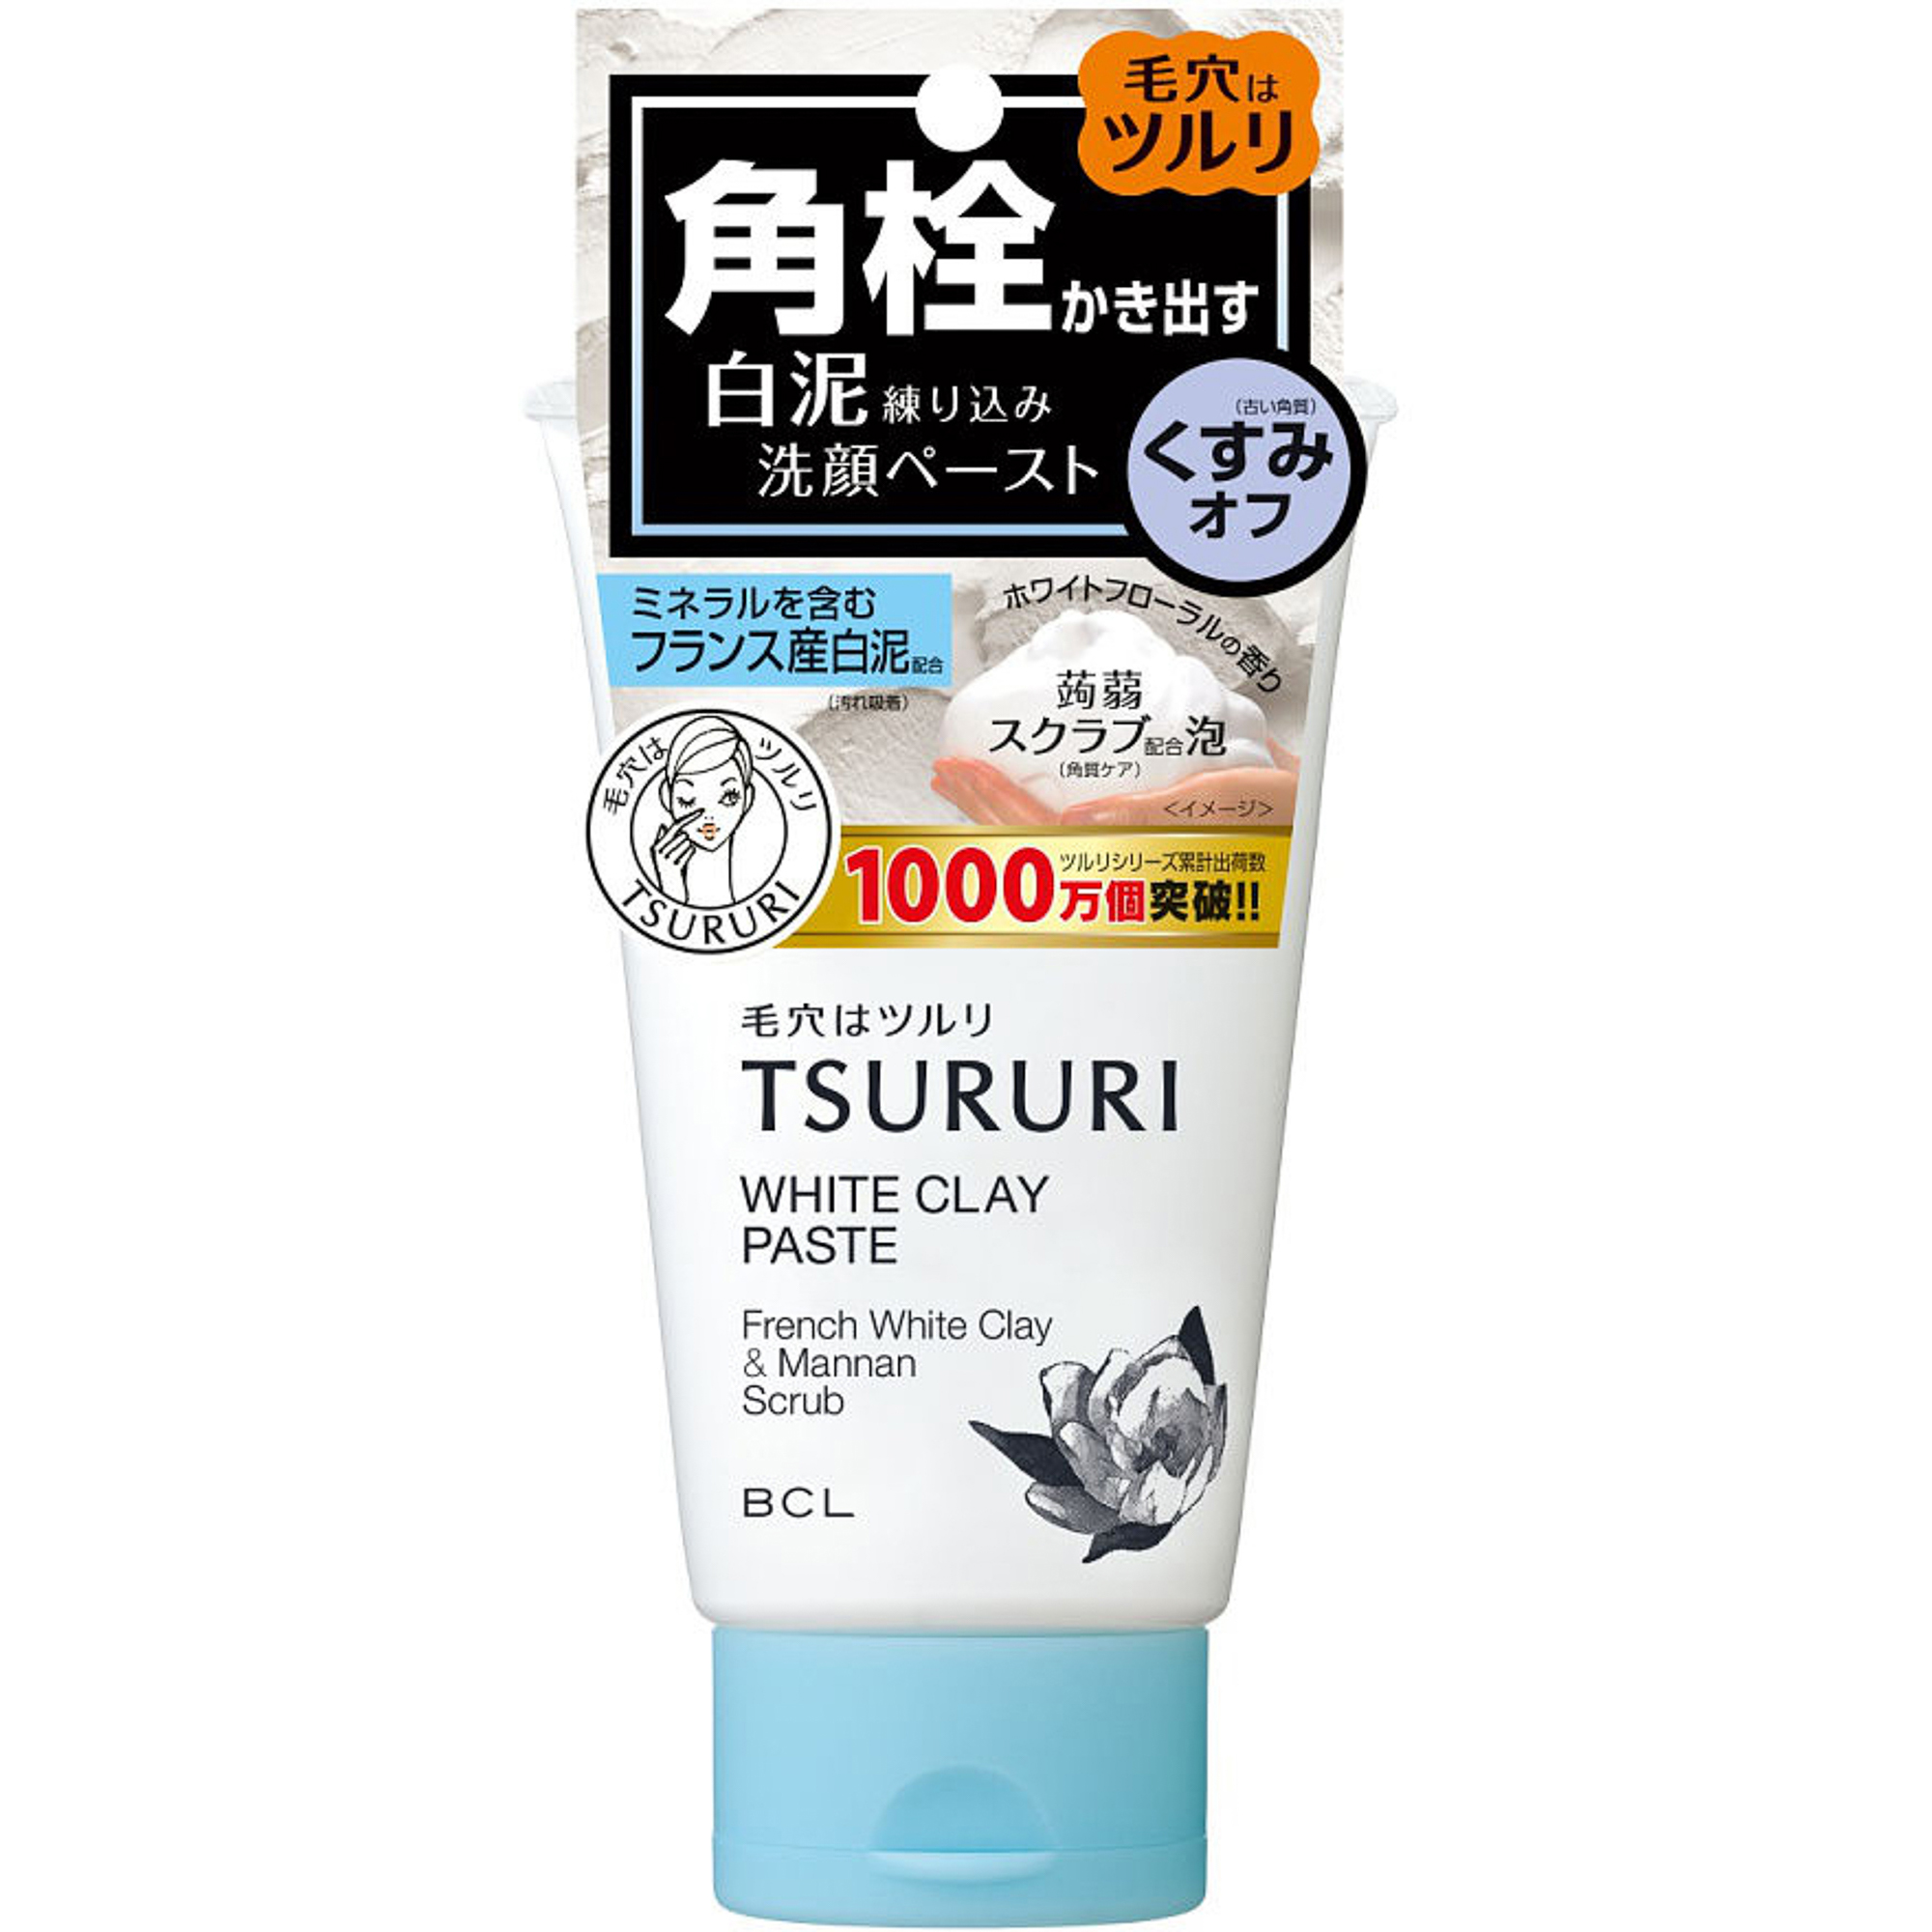 Пенка-скраб Tsururi для глубокого очищения кожи с французской белой глиной и японским маннаном 120 г скраб для лица mi